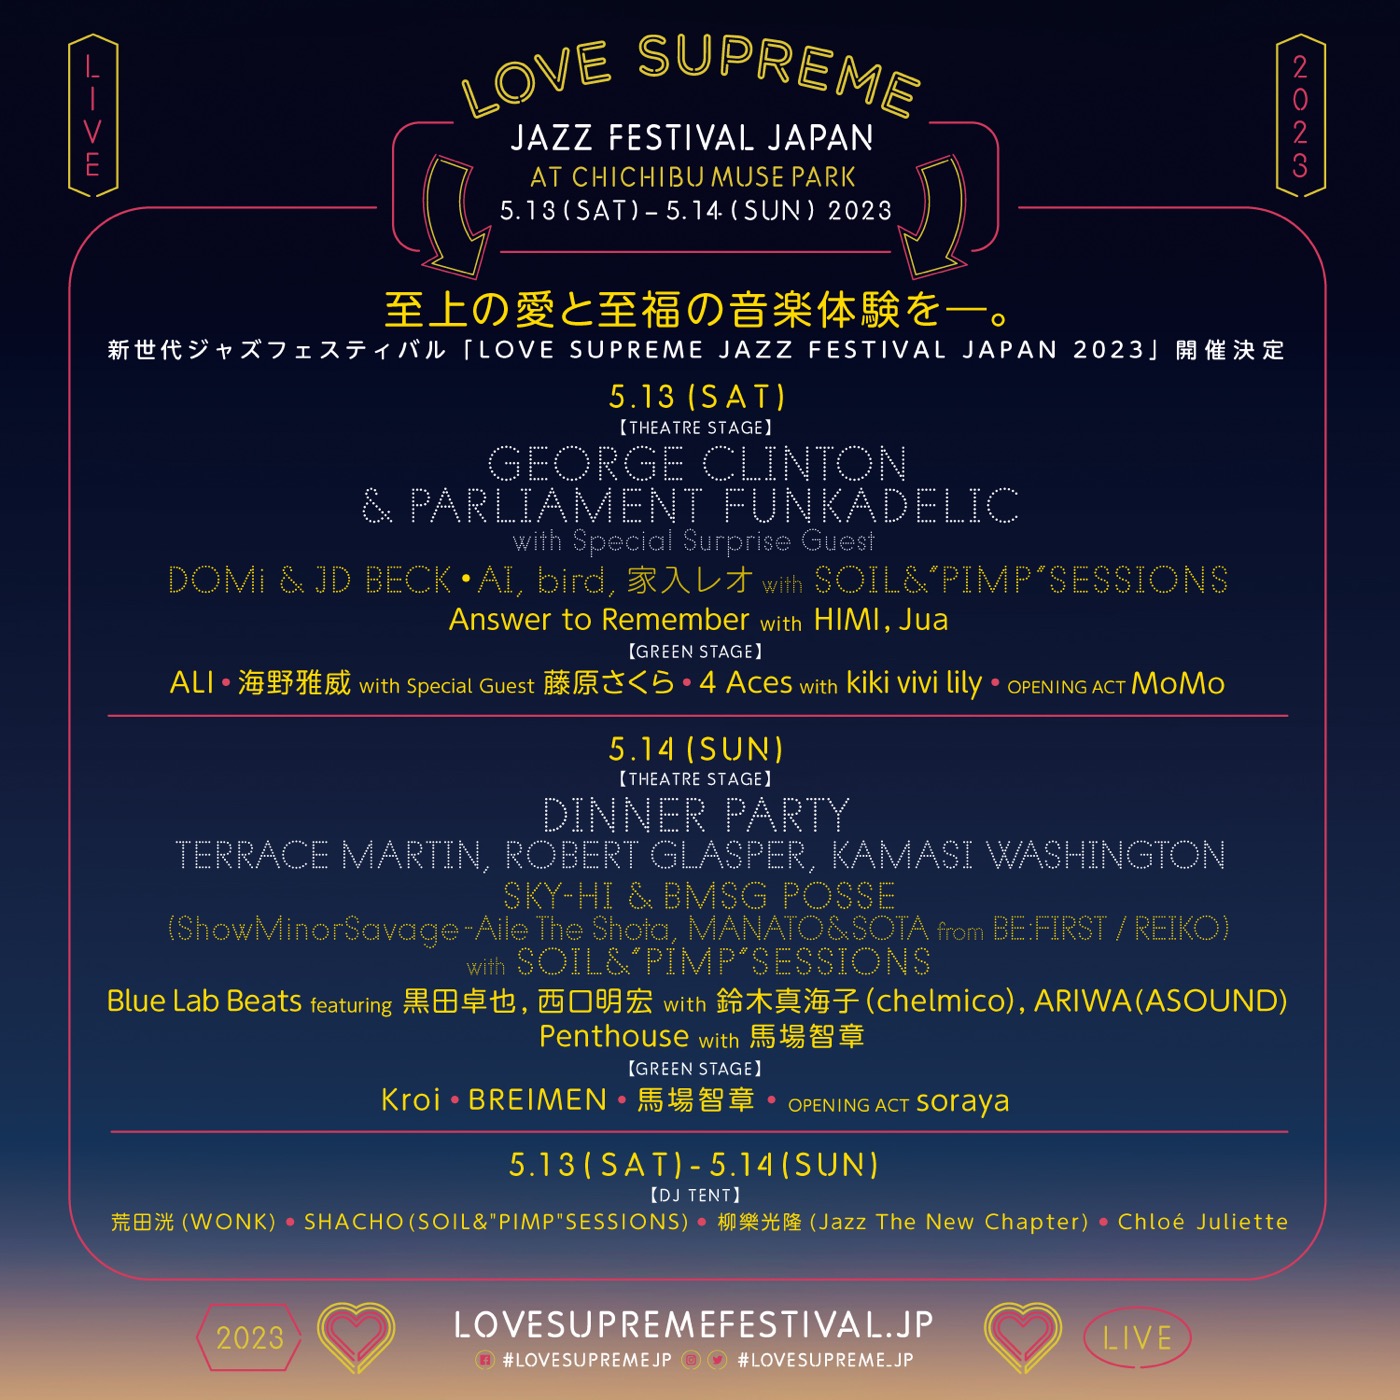 【レポート】SKY-HI率いるBMSG POSSE、ENDRECHERIらが豪華競演！『LOVE SUPREME JAZZ FESTIVAL JAPAN 2023』が大盛況で終了 - 画像一覧（1/8）